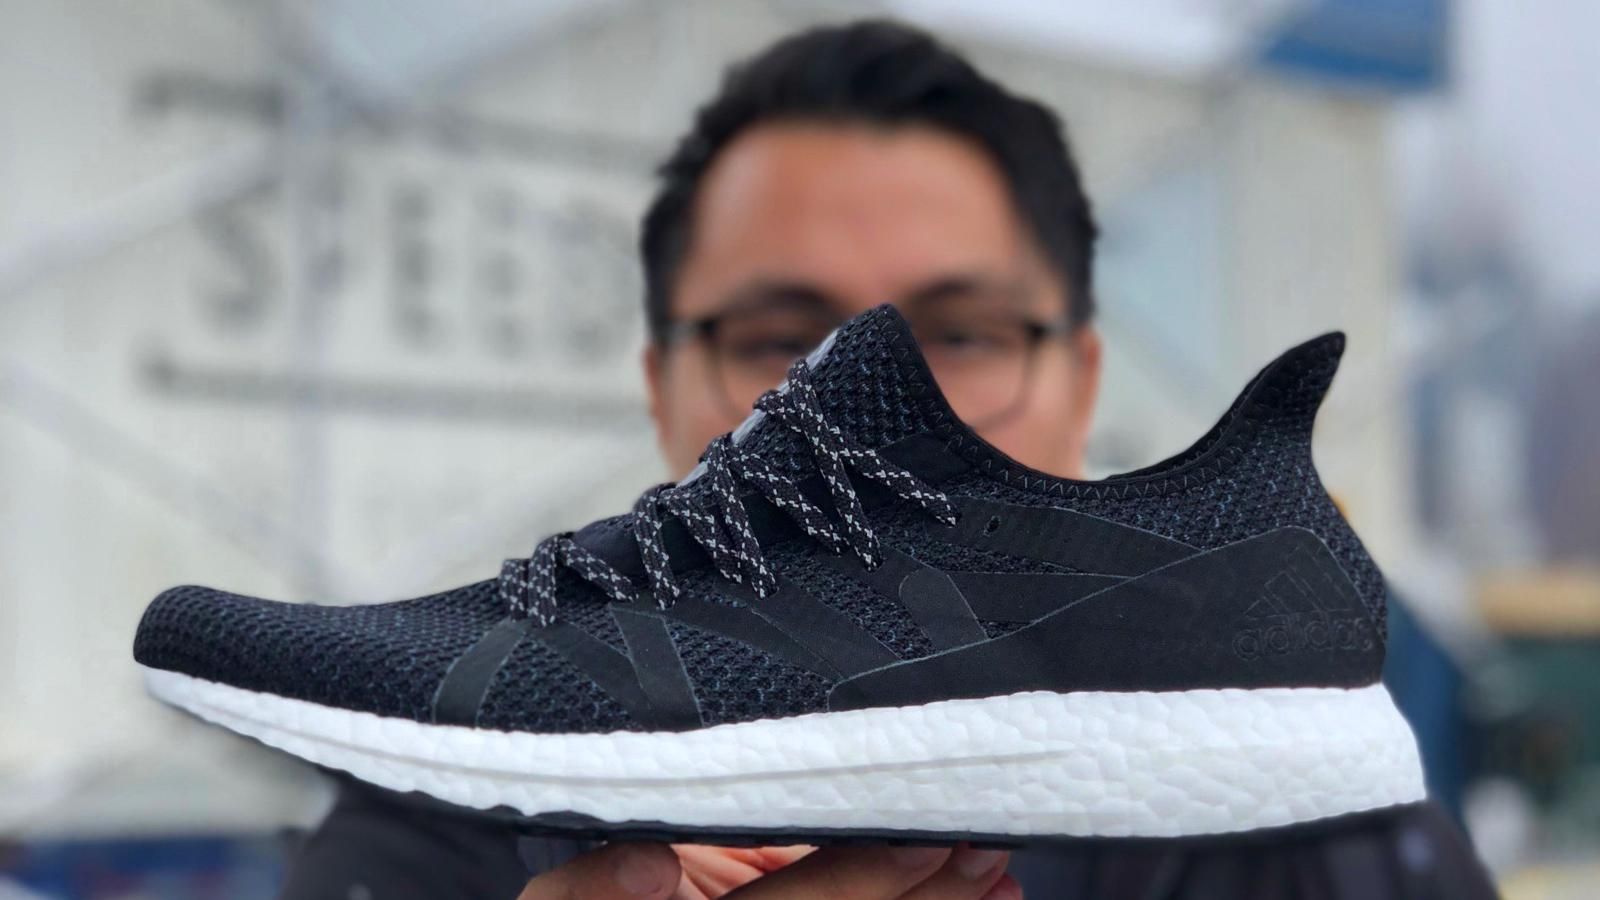  Adidas выпустила "умные" кроссовки для жителей Нью-Йорка: чем они особенные